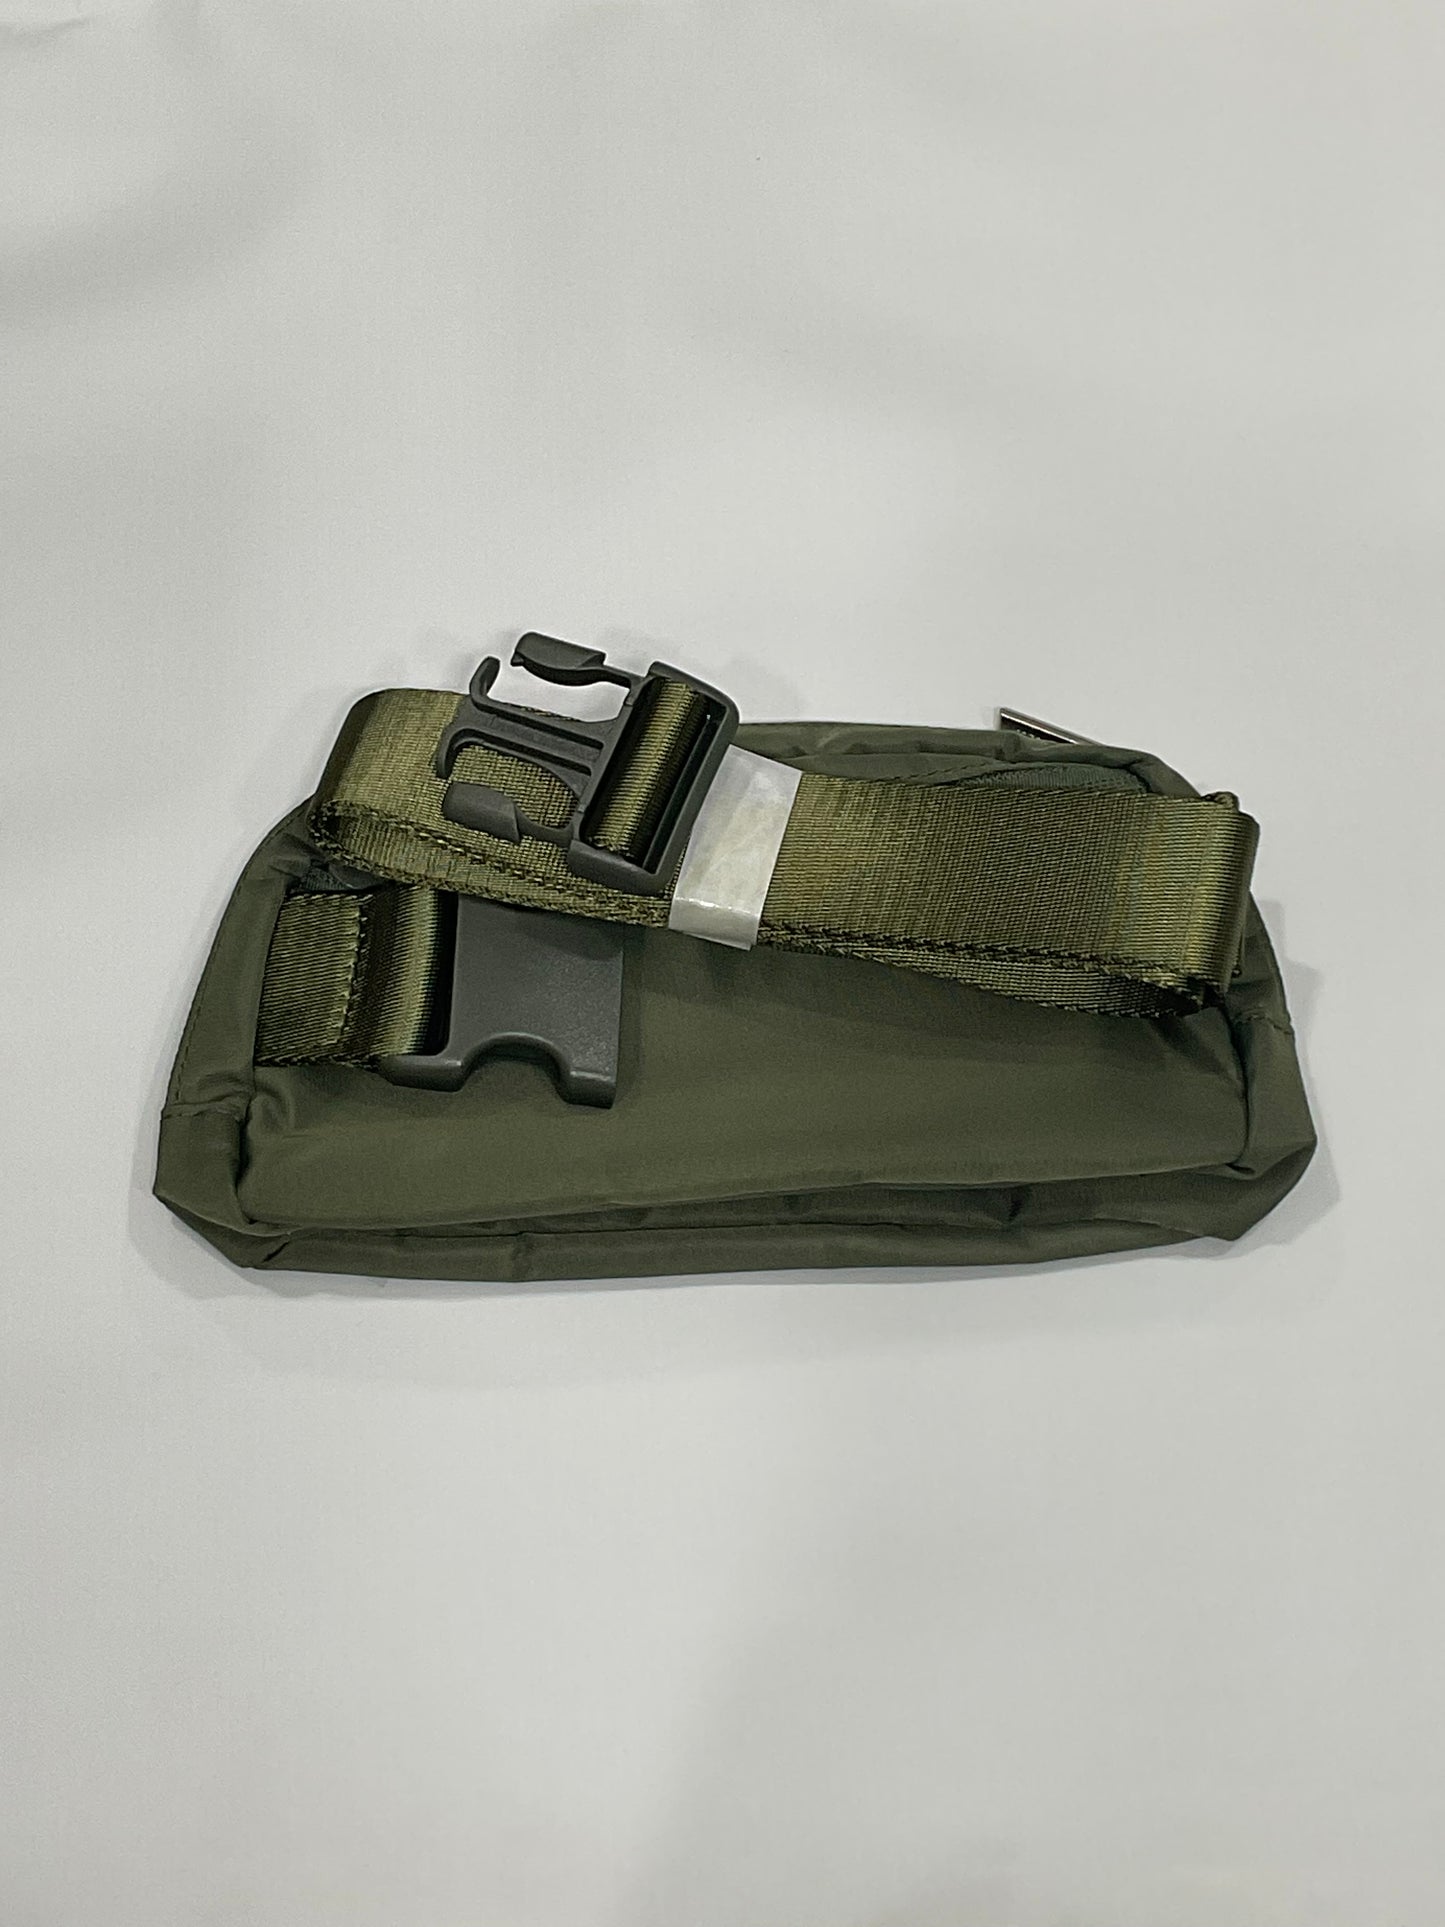 Lululemon Everywhere Belt Bag 1L - Army Green